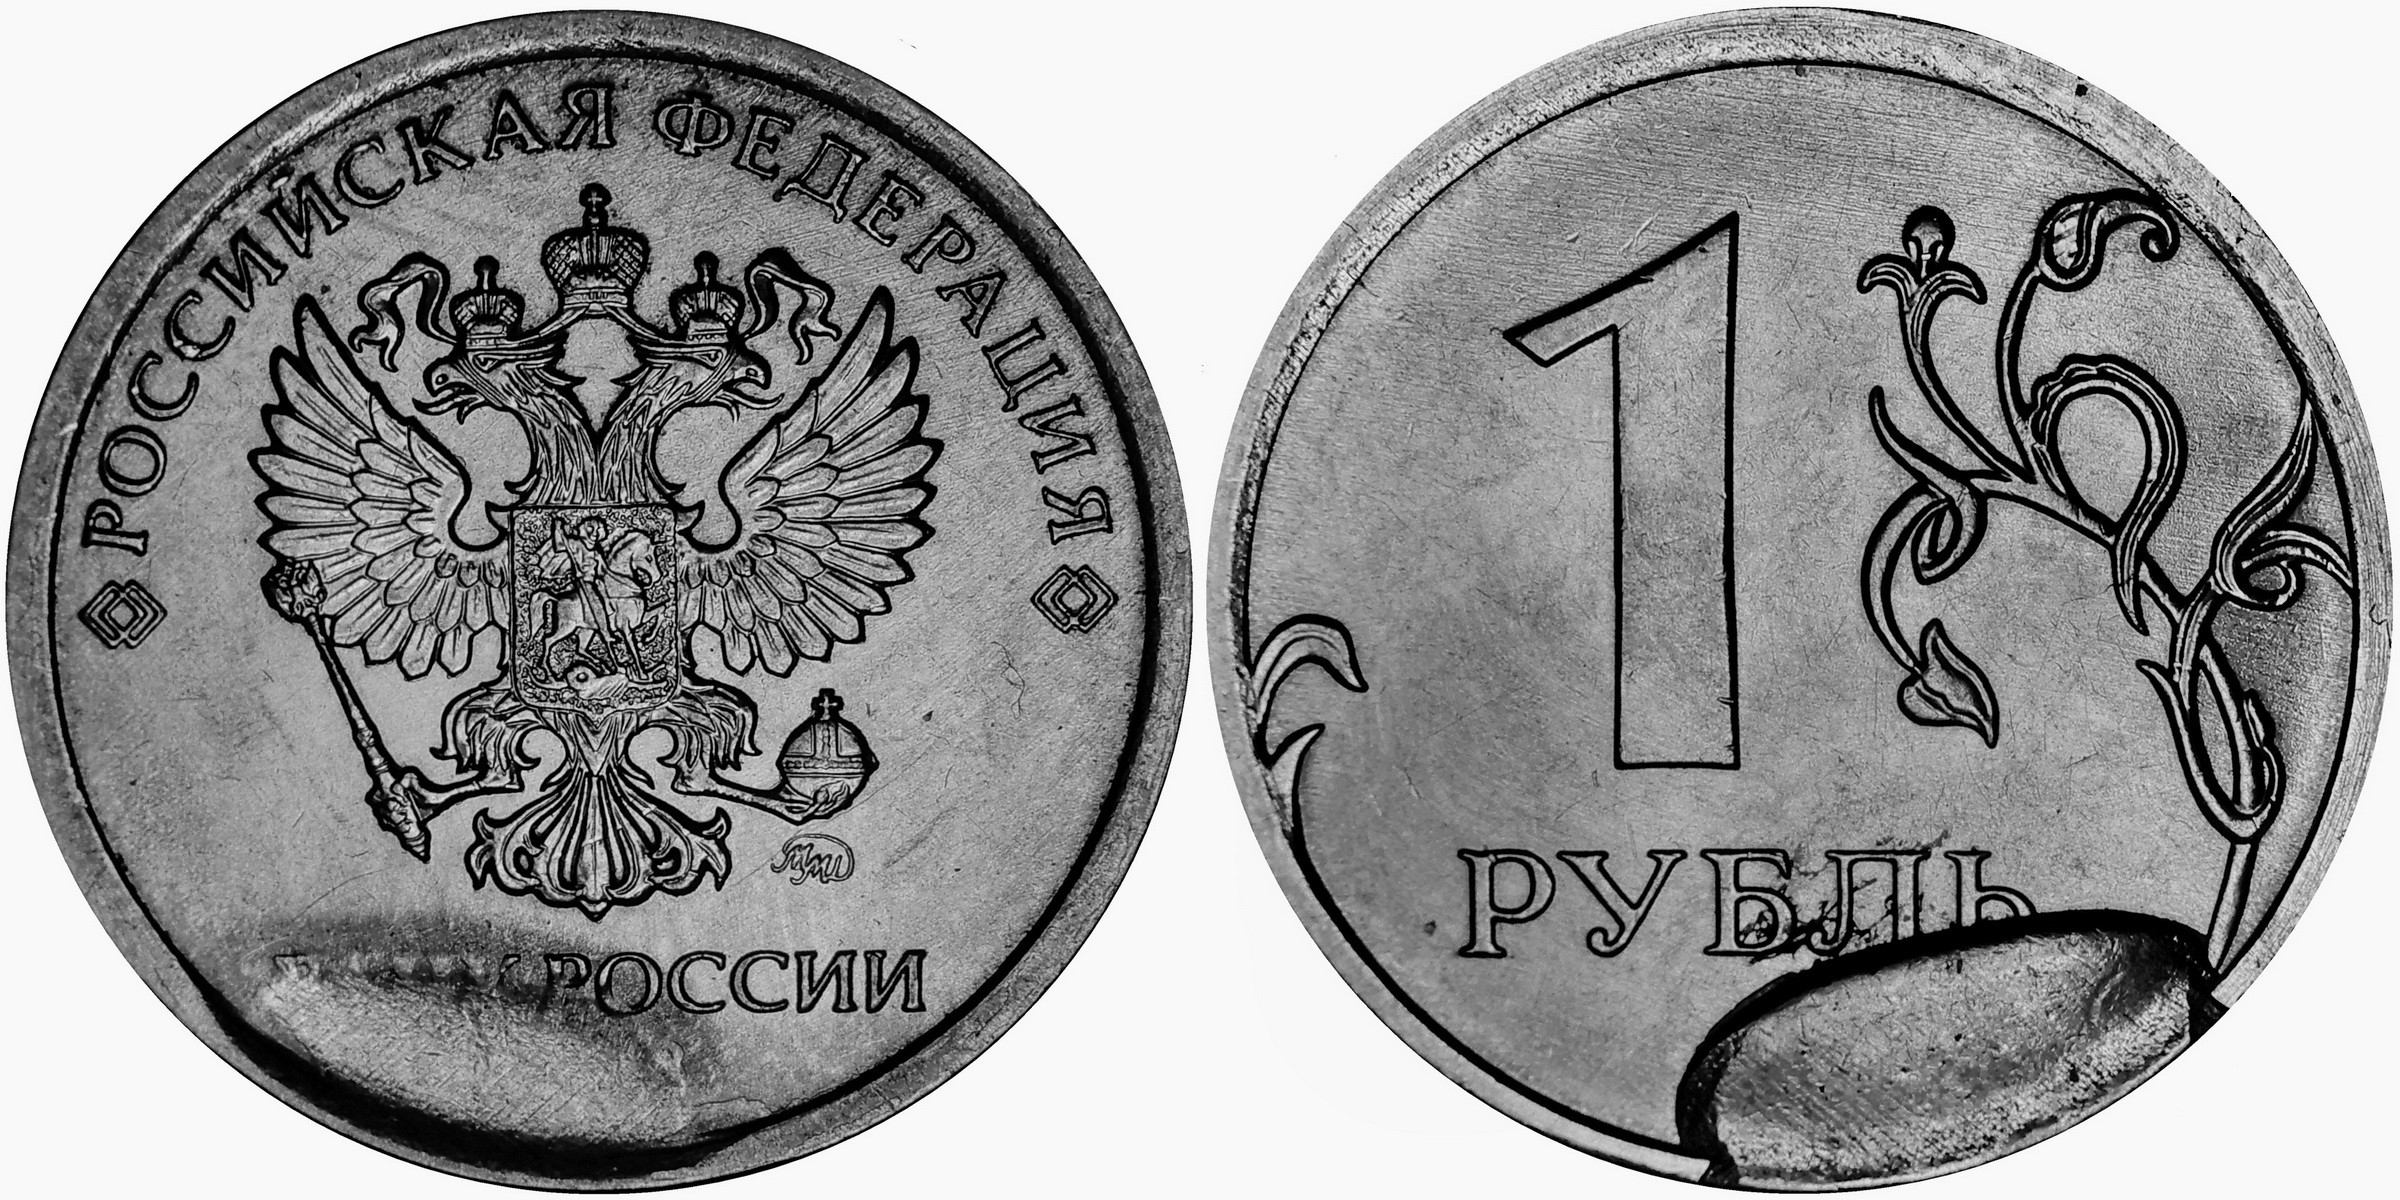 Б рубль в российском рубле. Монета 1 рубль реверс и Аверс. 1 Рубль 2020 брак раскол штемпеля. 1 Рубль 2020 года брак раскол. Монета брак 1 рубль 2020 раскол штемпеля.